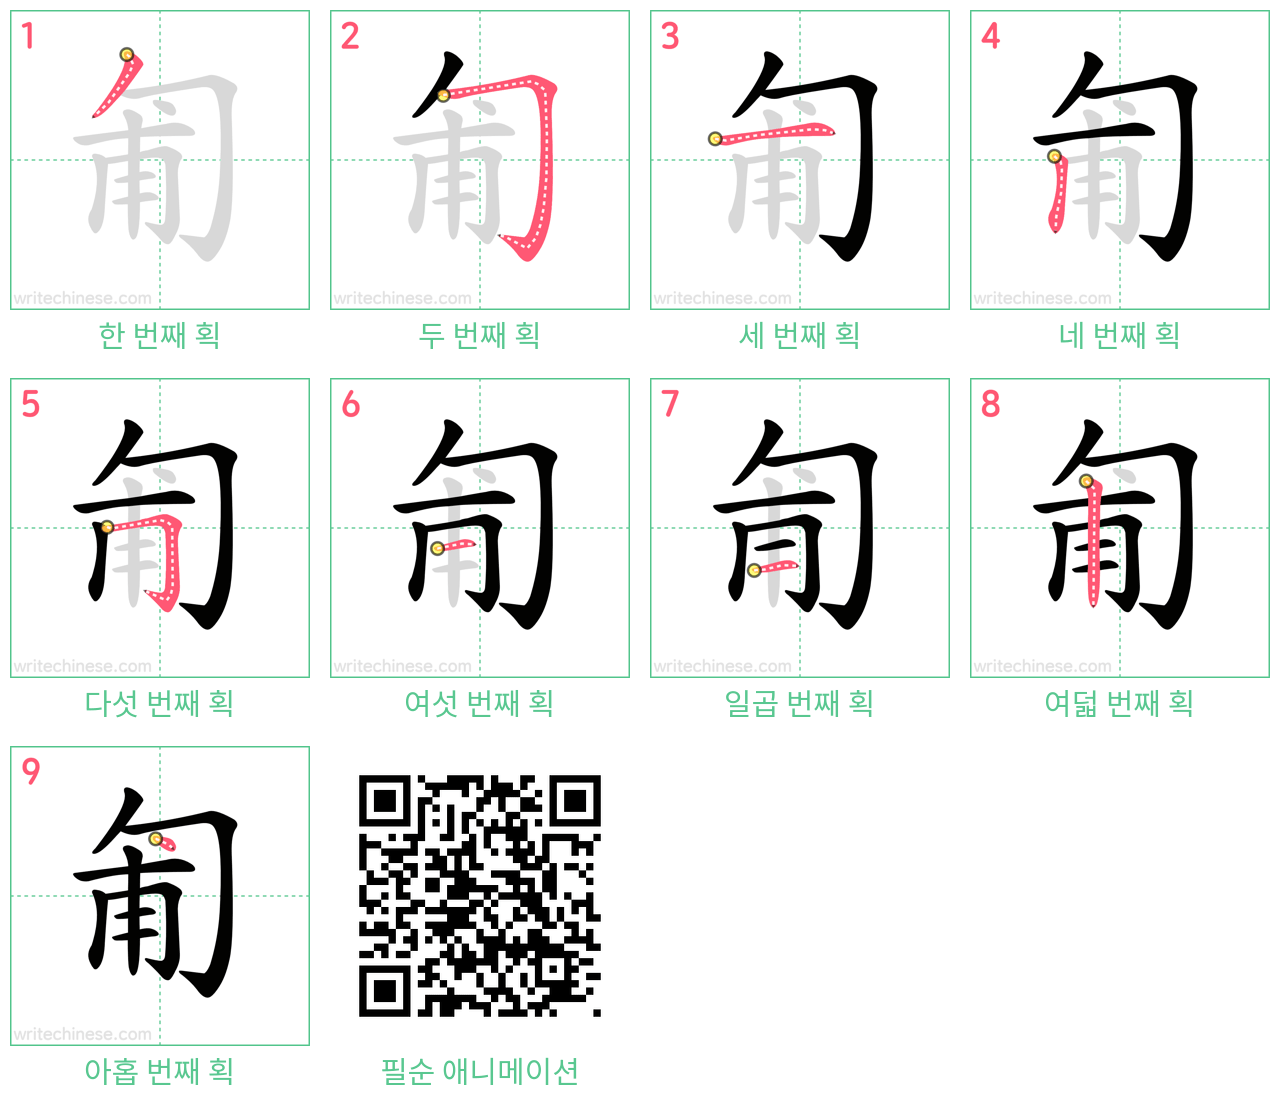 匍 step-by-step stroke order diagrams